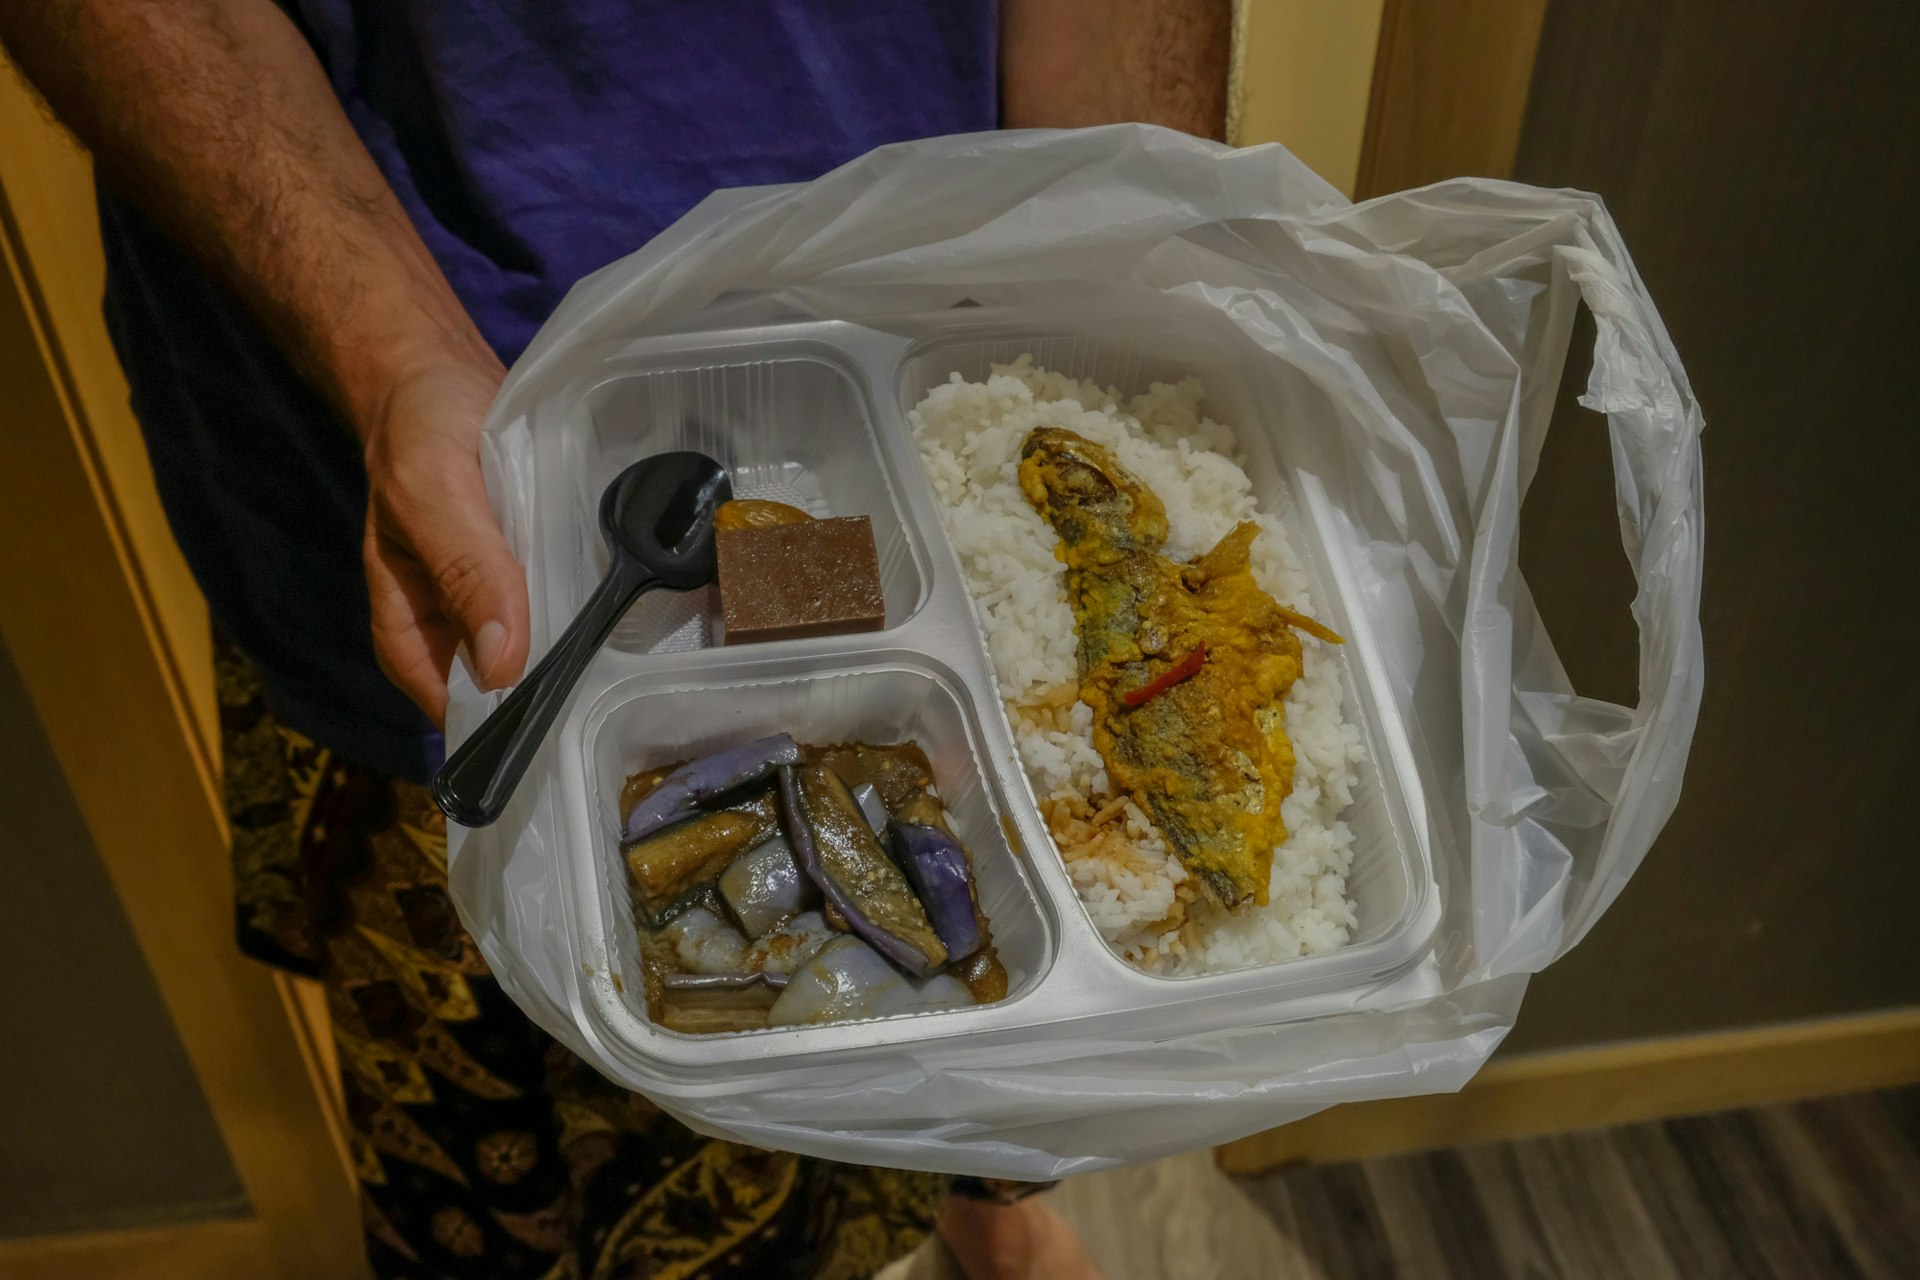 Takeaway food in a plastic bag